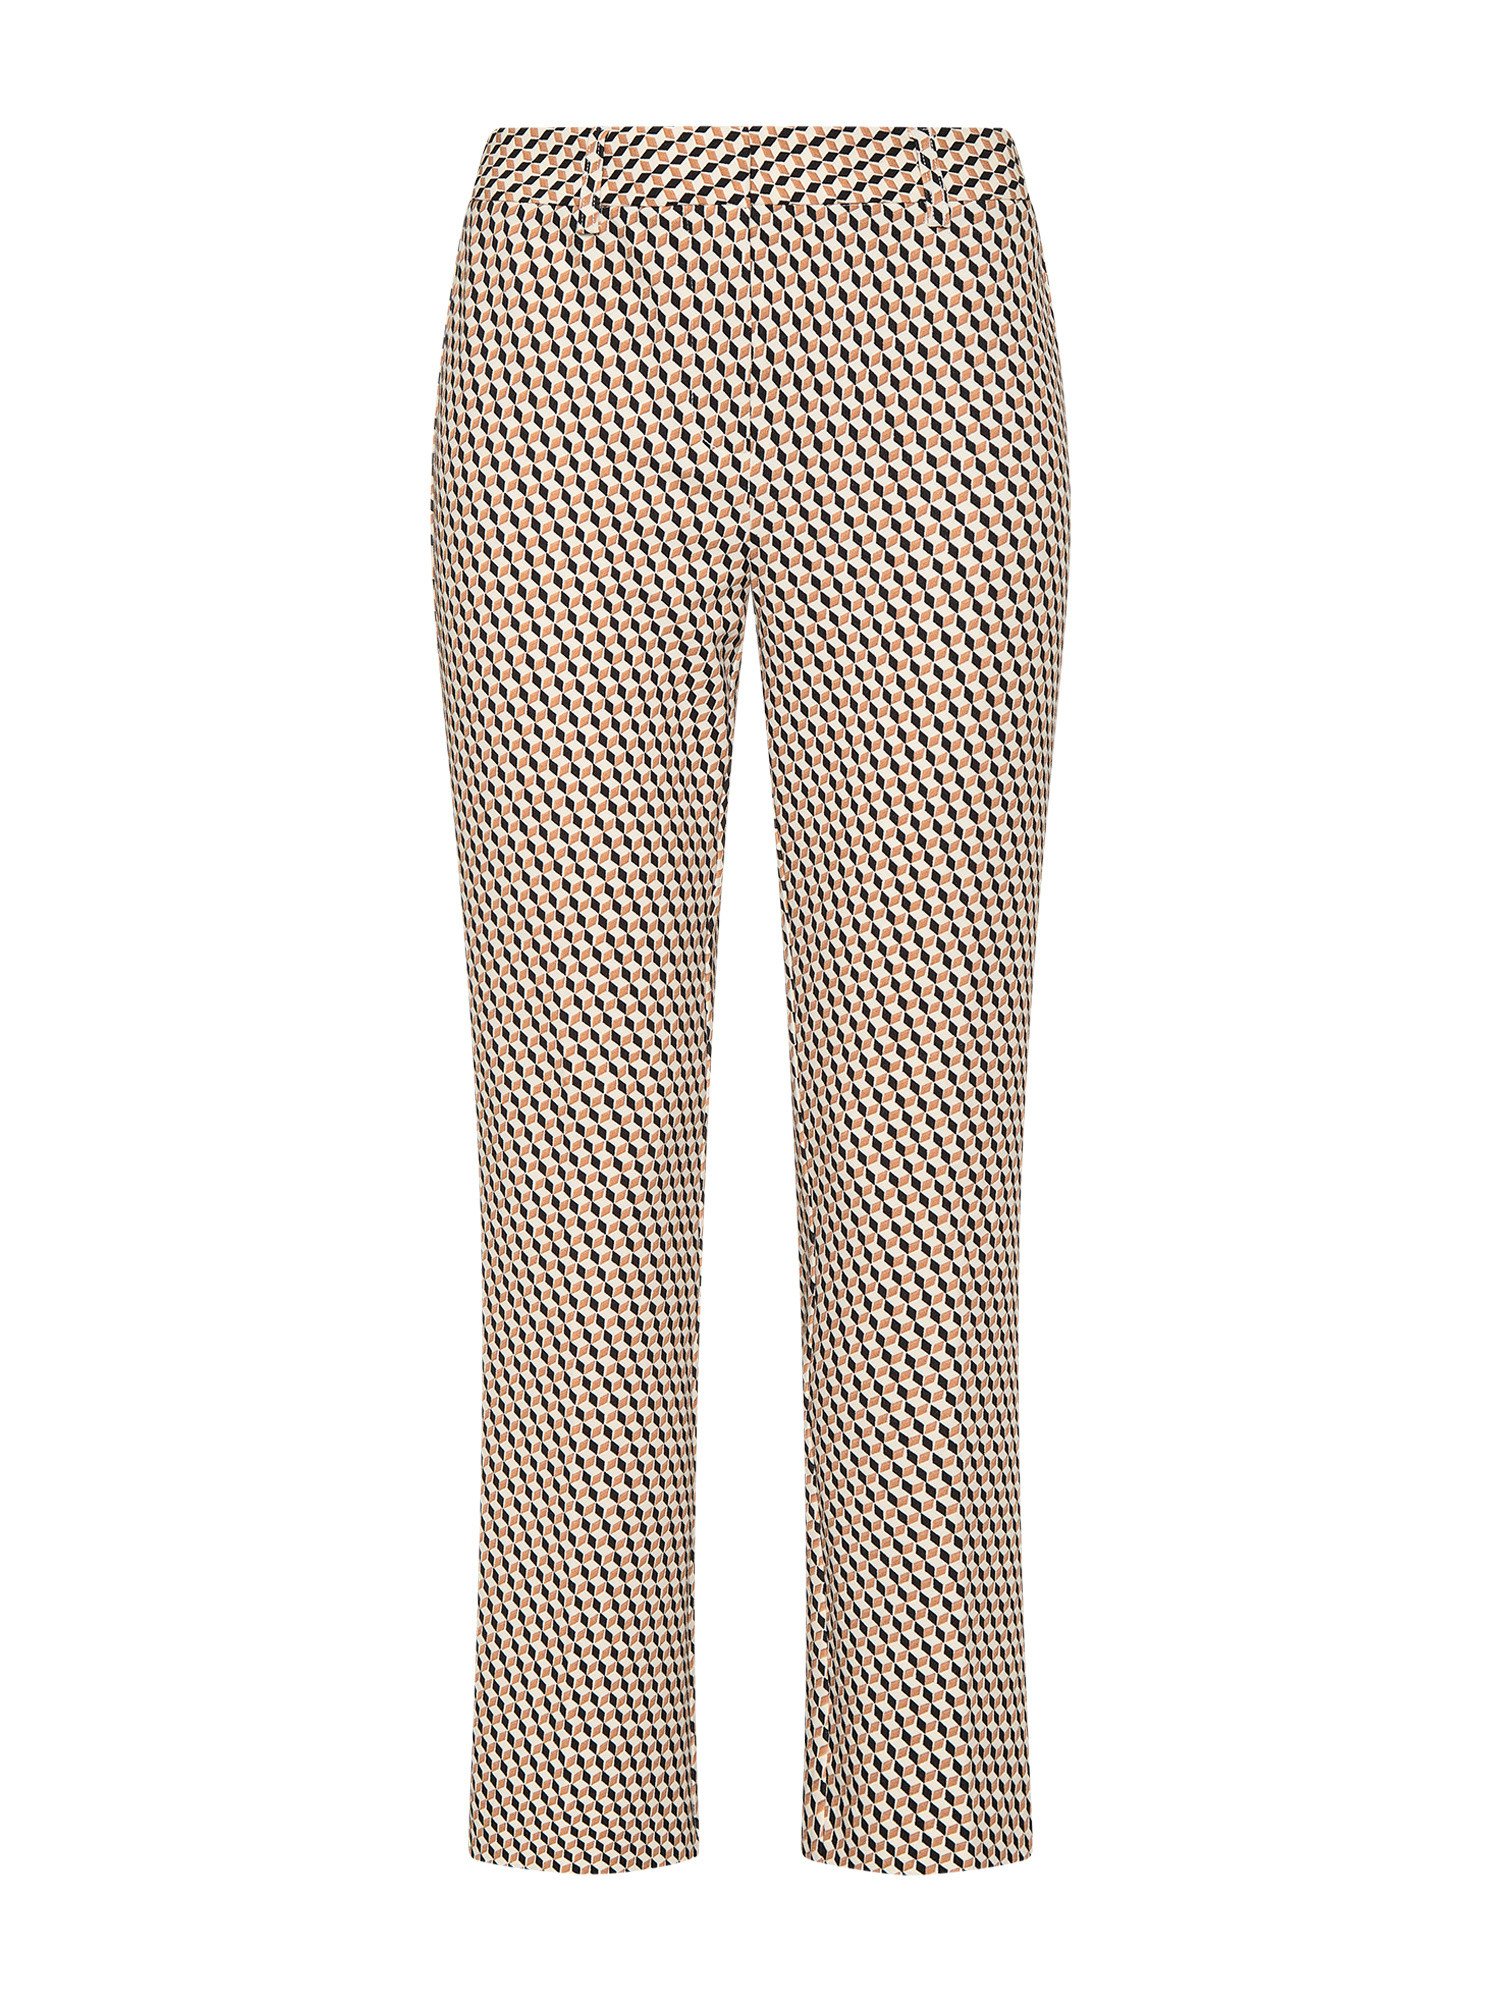 Koan - Pantaloni flare in tessuto stampato, Nero, large image number 0